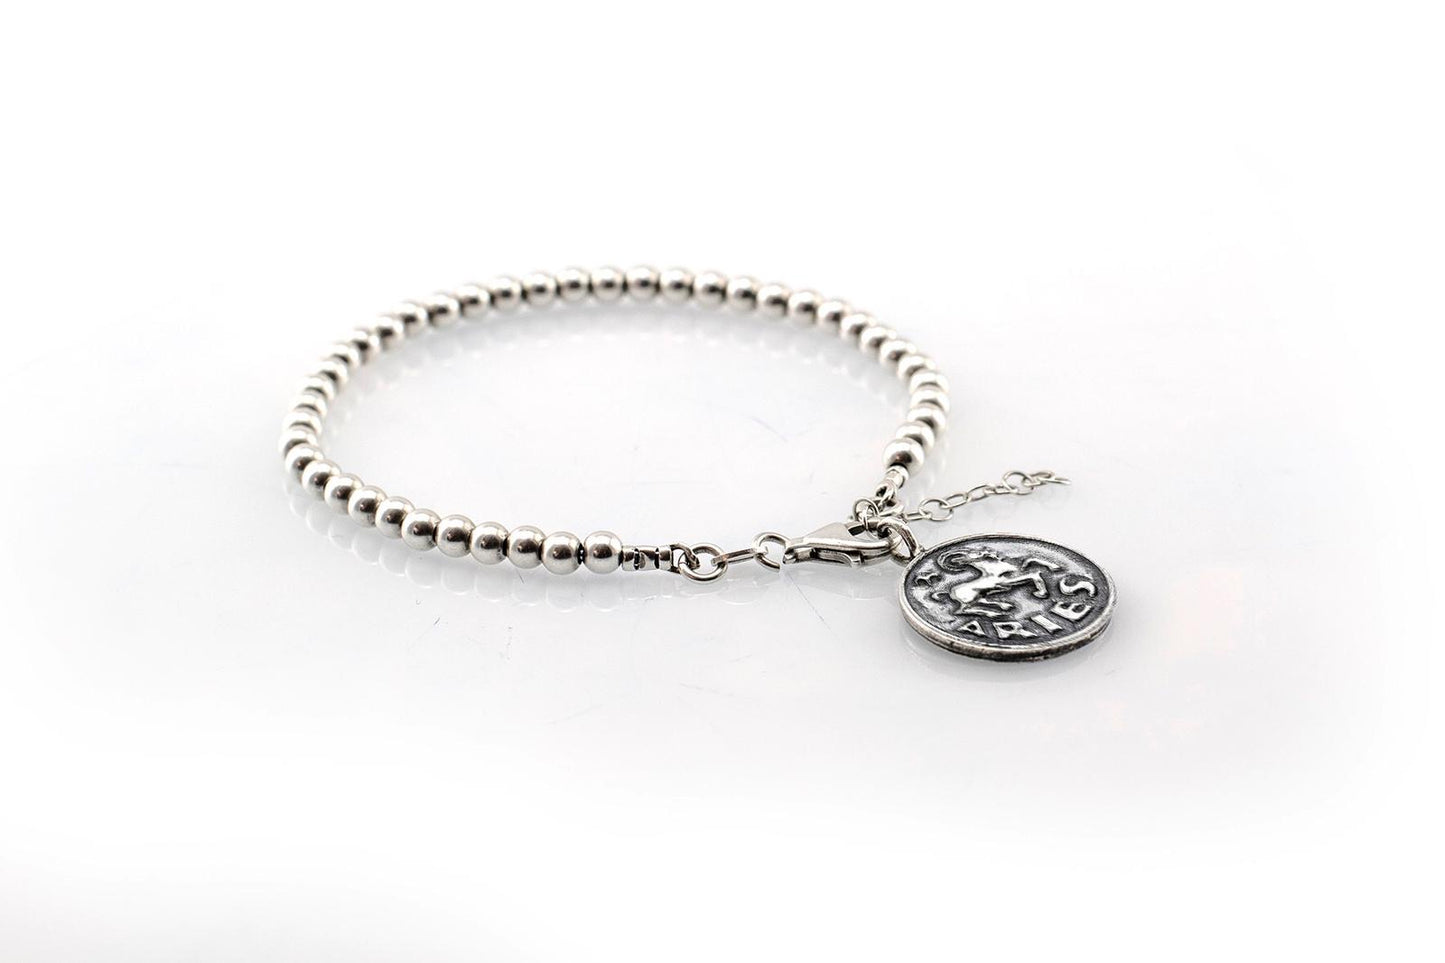 Aries medallion with a Bead Bracelet -Zodiac jewelry -One of kind jewelry